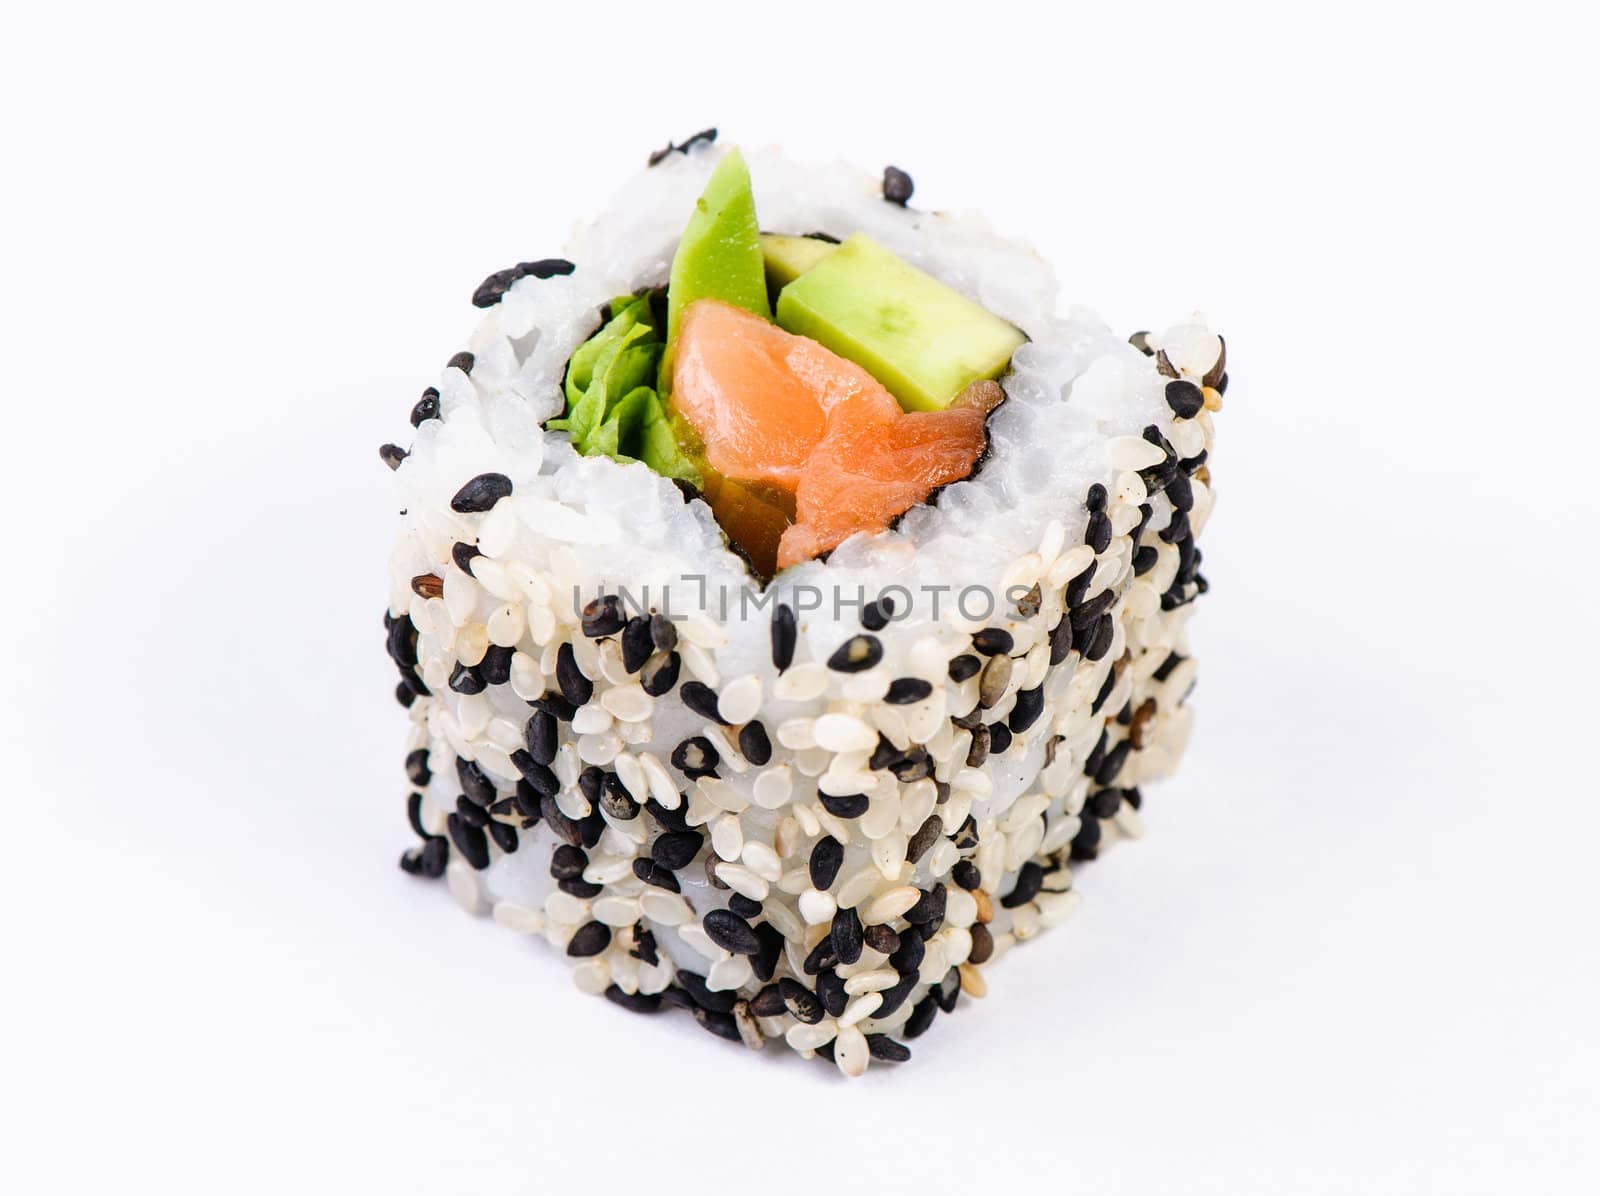 Sushi with avocado on white background